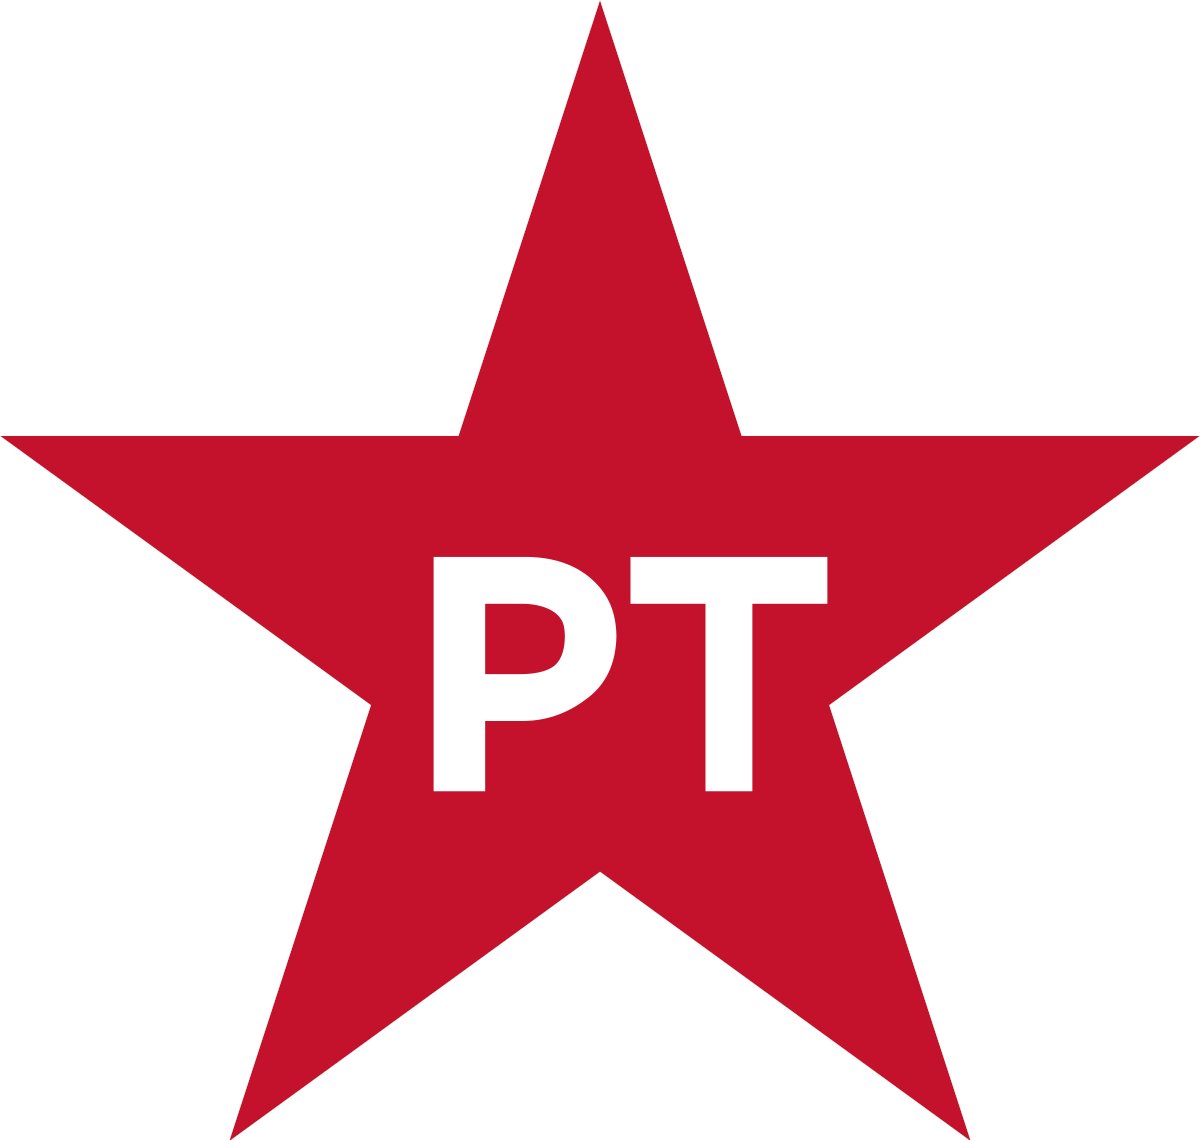 En 1979 el partido Organización Revolucionaria de Trabajadores (ORT) se fusionó con el Partido del Trabajo de España (PTE) dando lugar al Partido de los Trabajadores (PT).